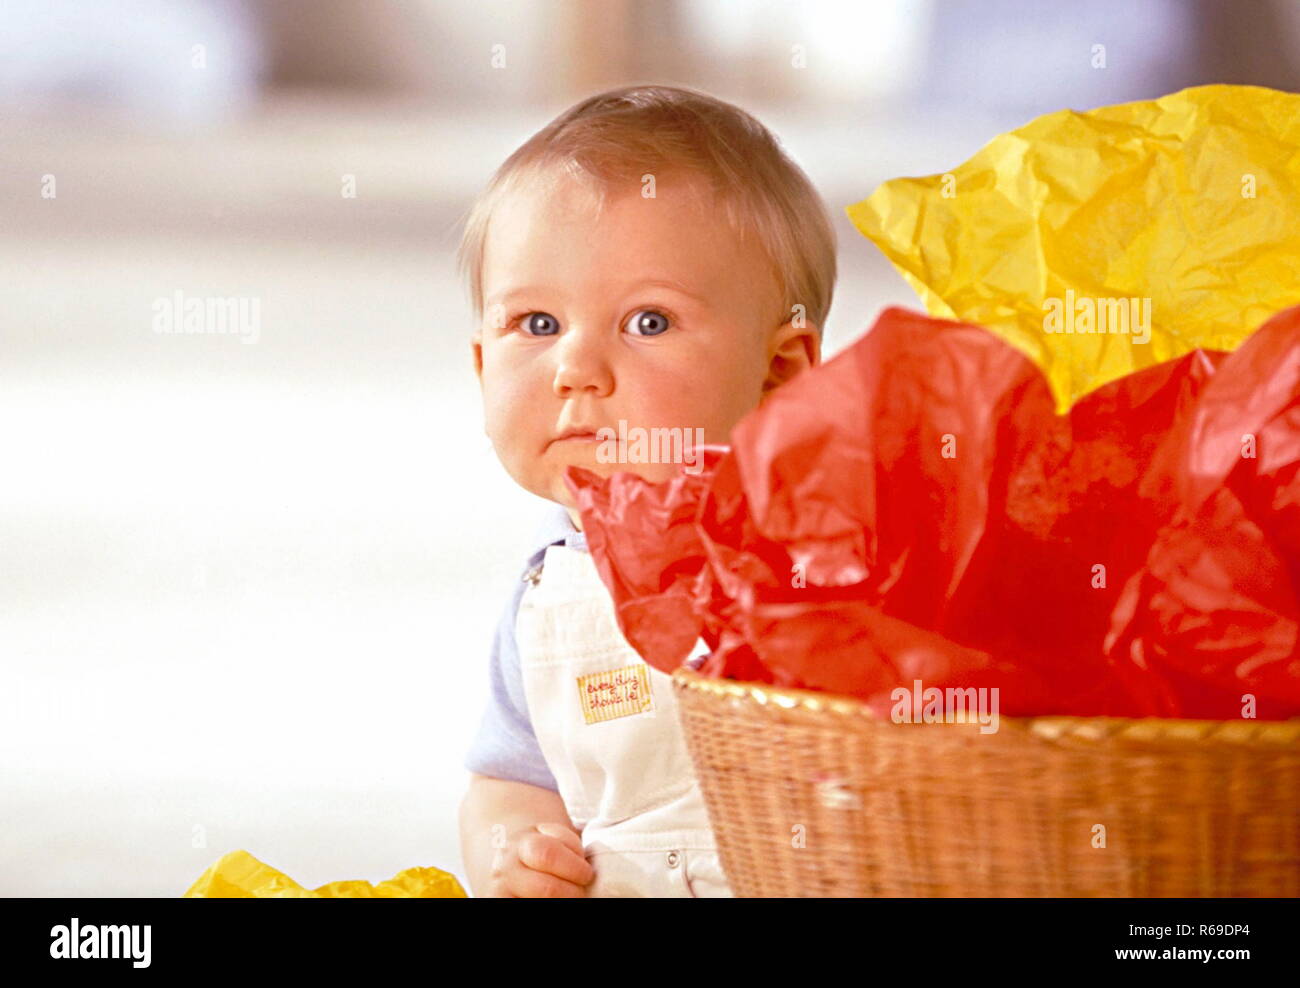 Portrait eines kleinen Jungen hinter einem Korb mit roten und gelben Plastiktueten Stock Photo